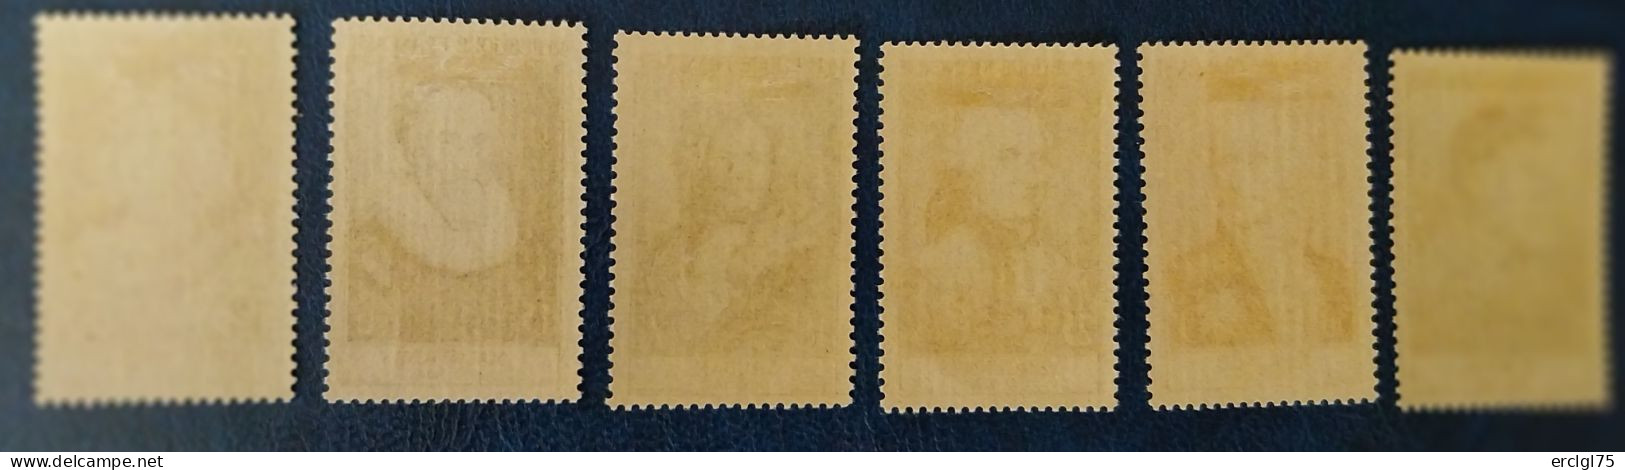 1954 : Célébrités Du 13ème Au 20ème Siècle - N° 989 Au N° 994 (Y&T) Cote : 110 Euros. - Unused Stamps